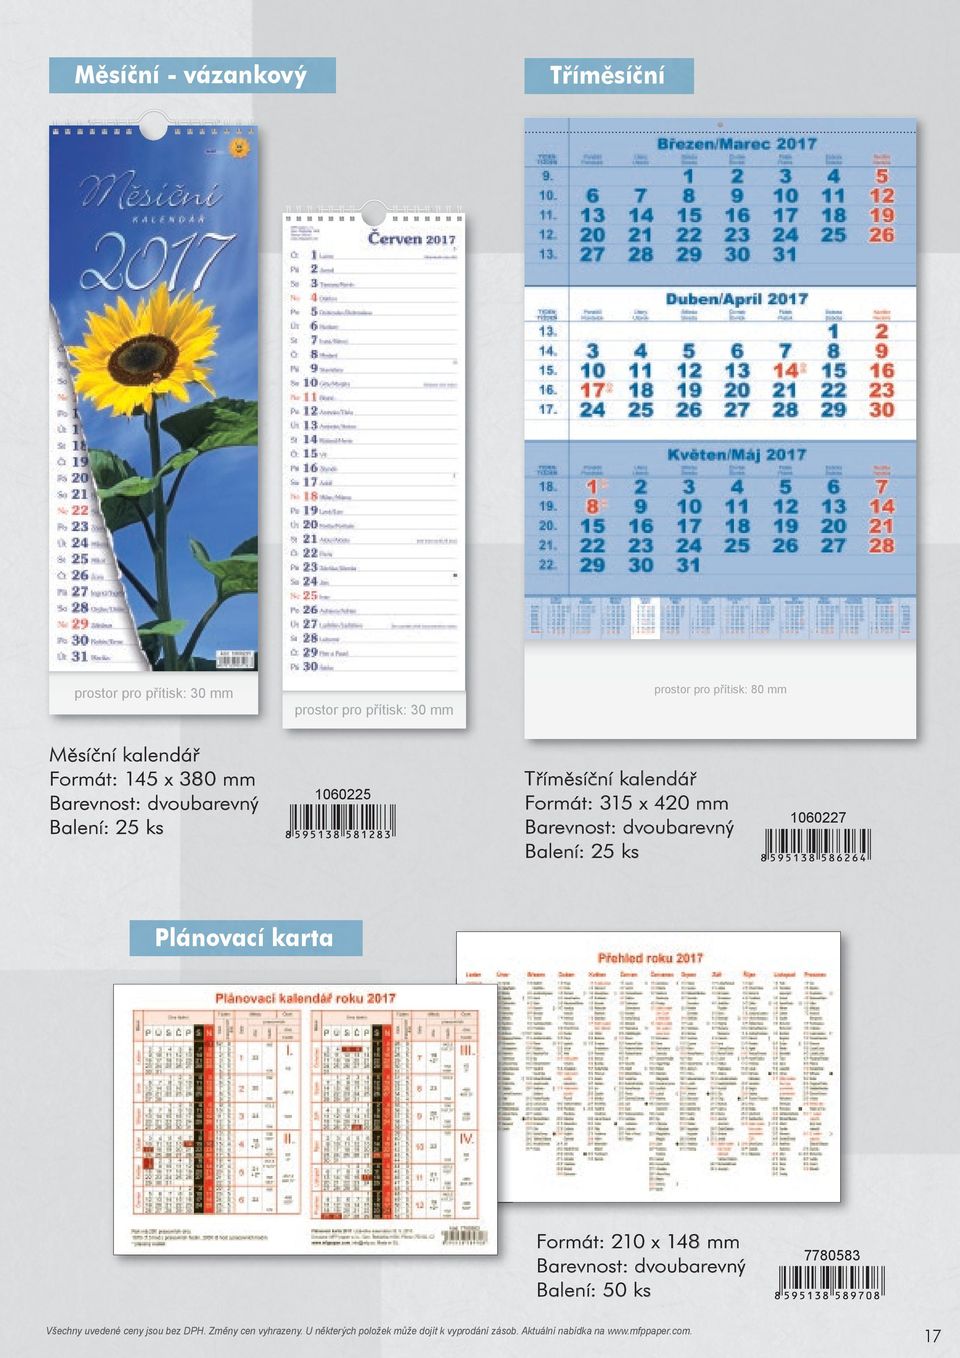 Tříměsíční kalendář Formát: 315 x 420 mm Barevnost: dvoubarevný